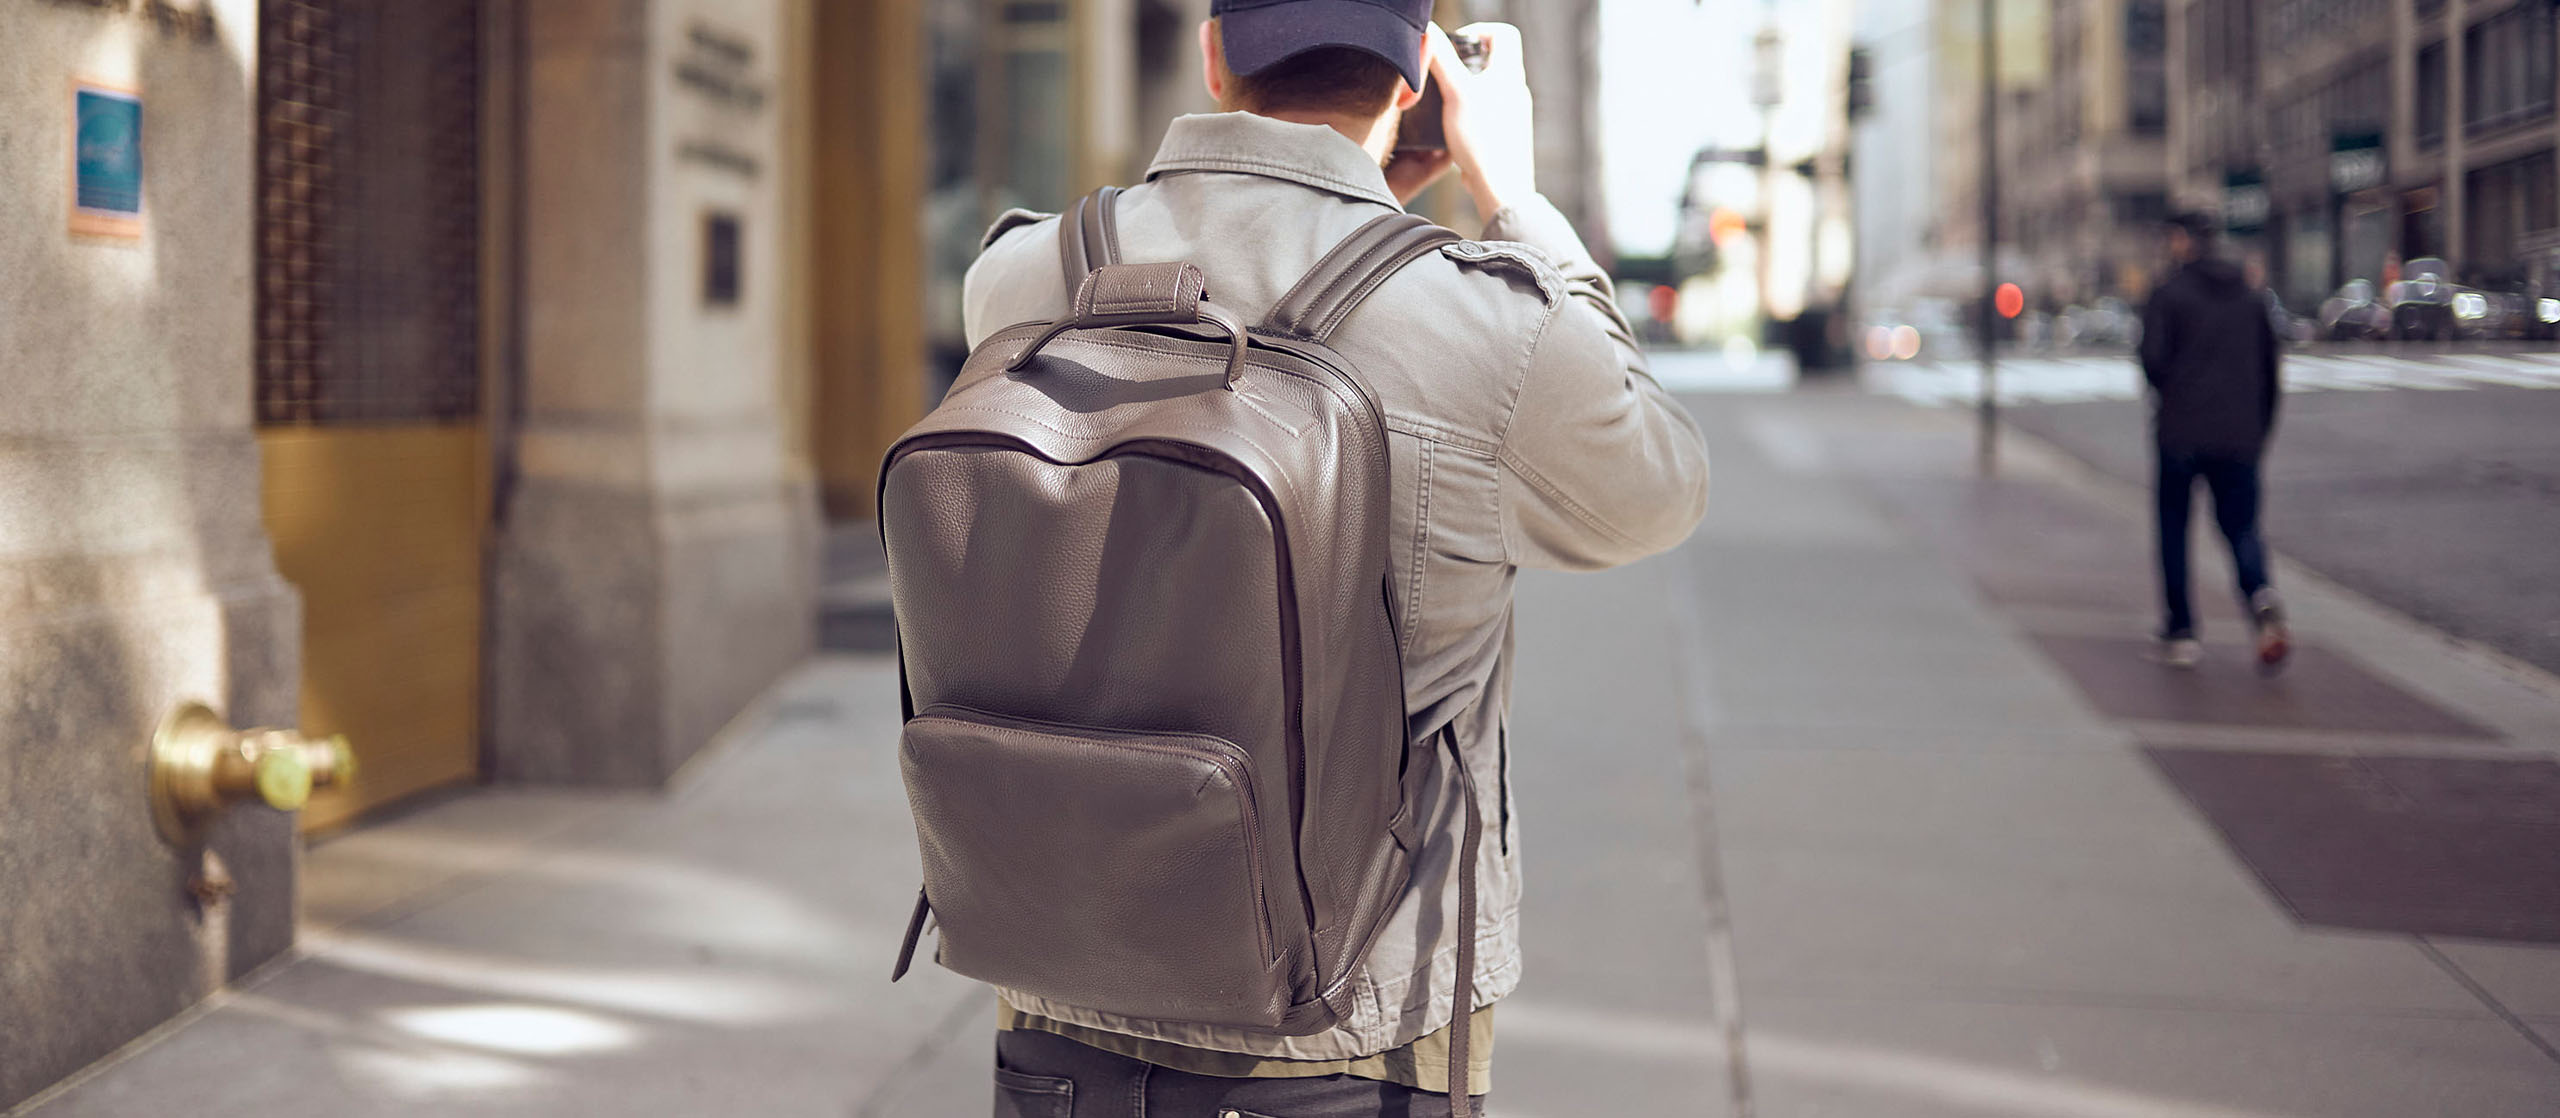 Mann mit einem Oberwerth Nelson Kamerarucksack auf dem Rücken läuft auf dem Bürgersteg einer New Yorker Straße